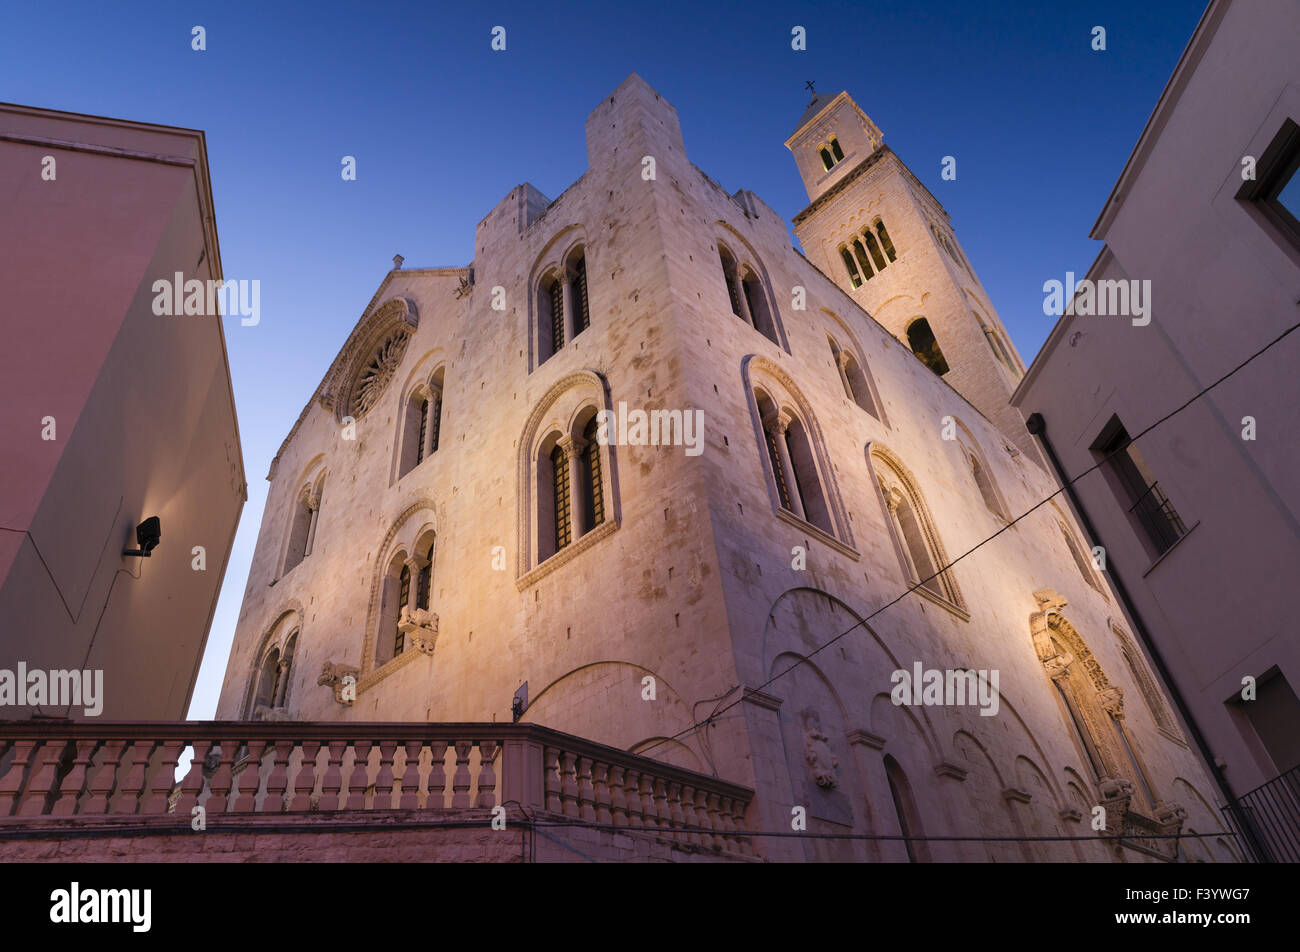 Eastside, San Sabino, Bari, Apulia Stock Photo